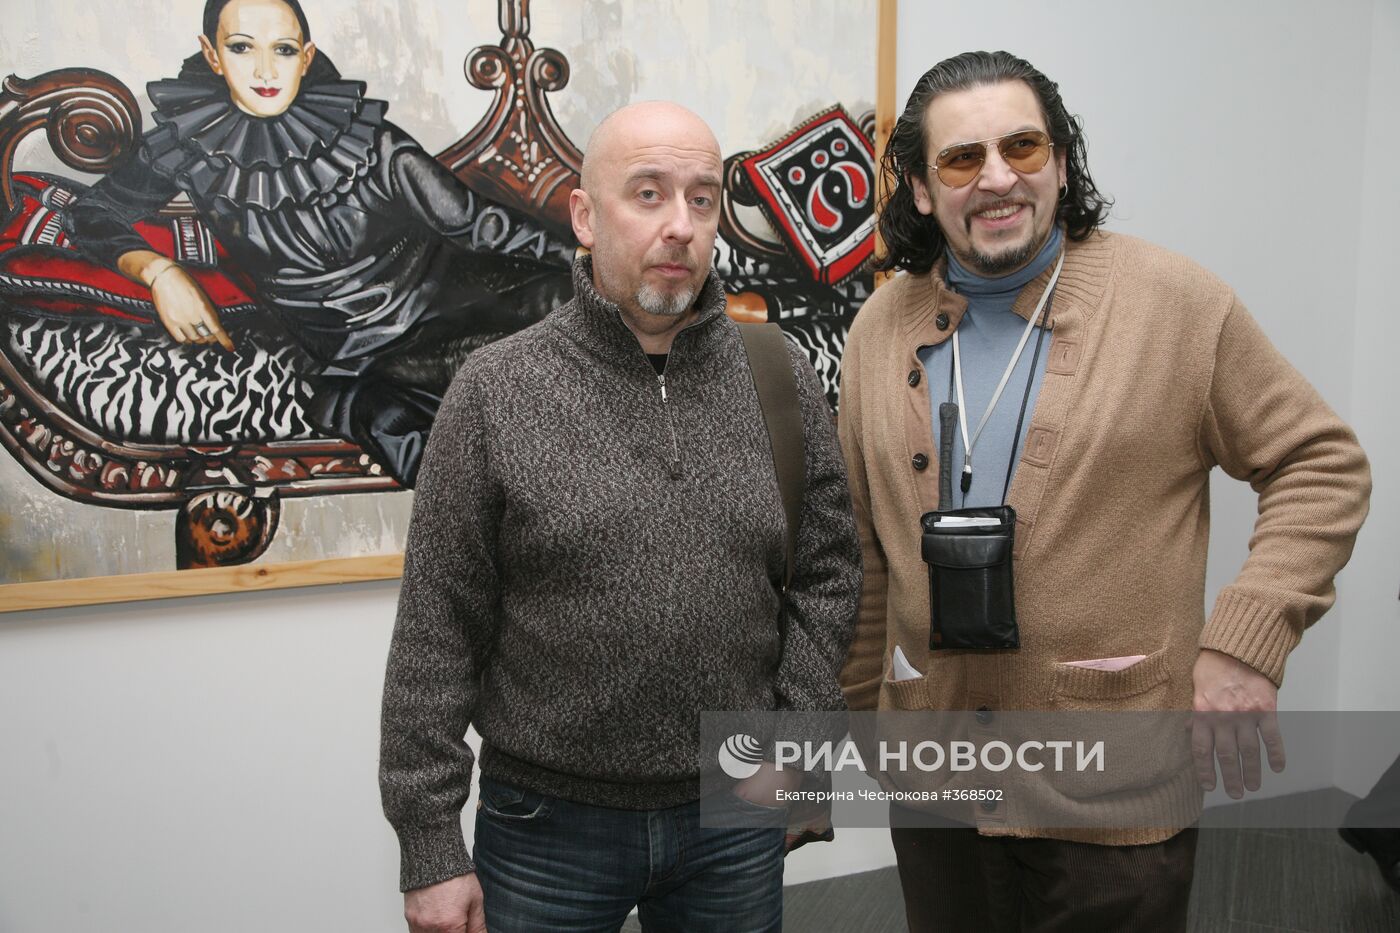 Ретроспективная выставка Таира Салахова открылась в Москве